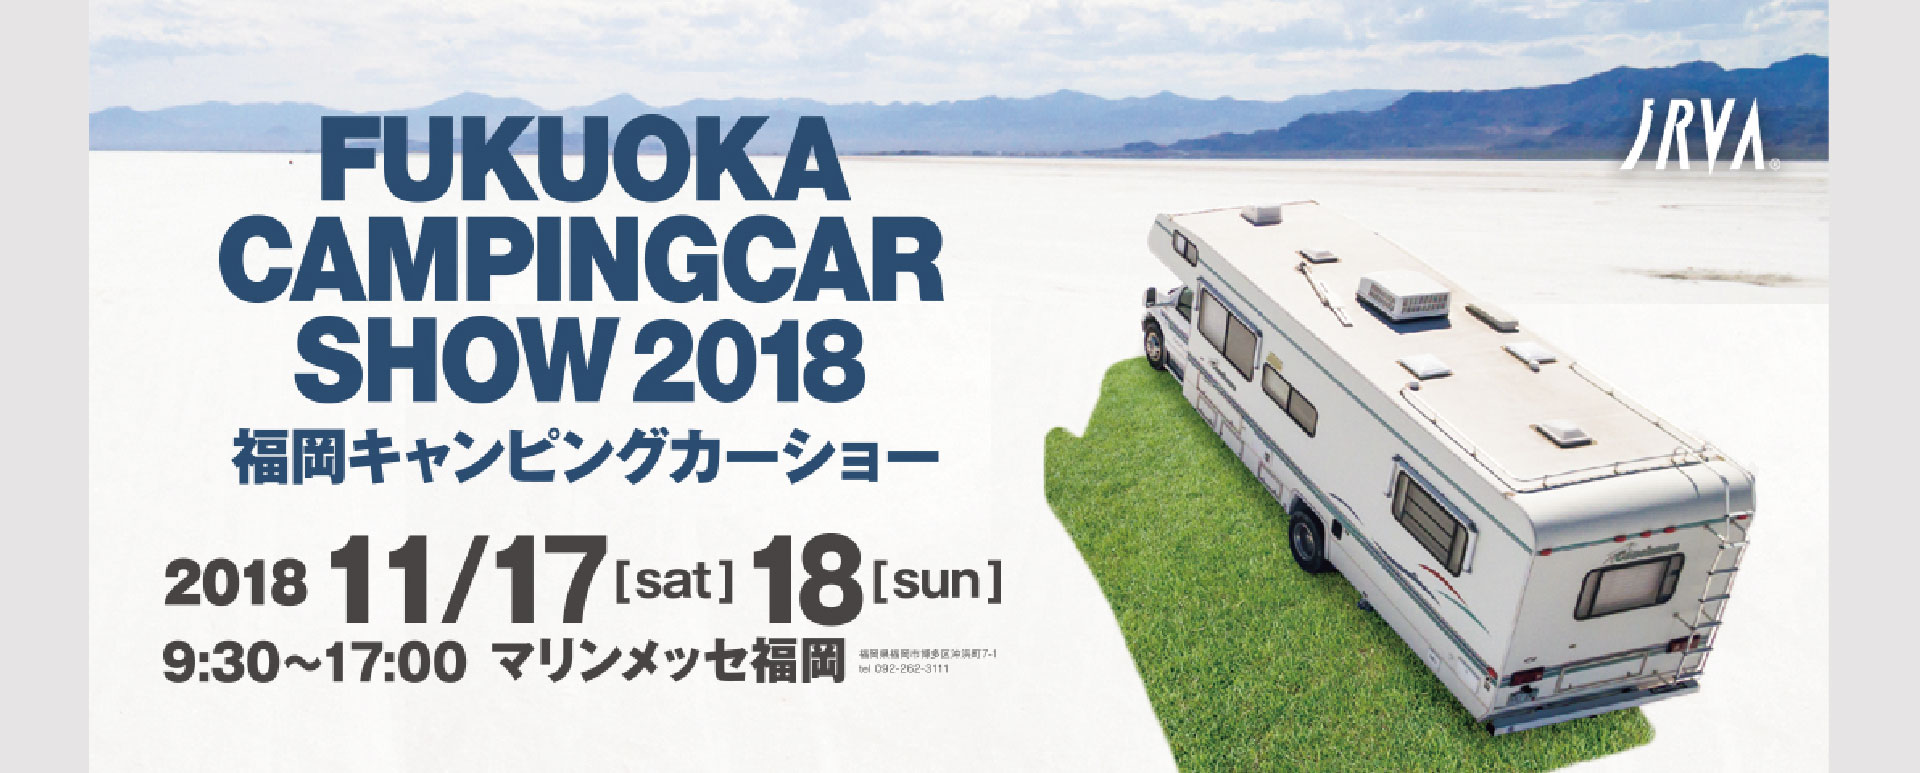 福岡キャンピングカーショー2018